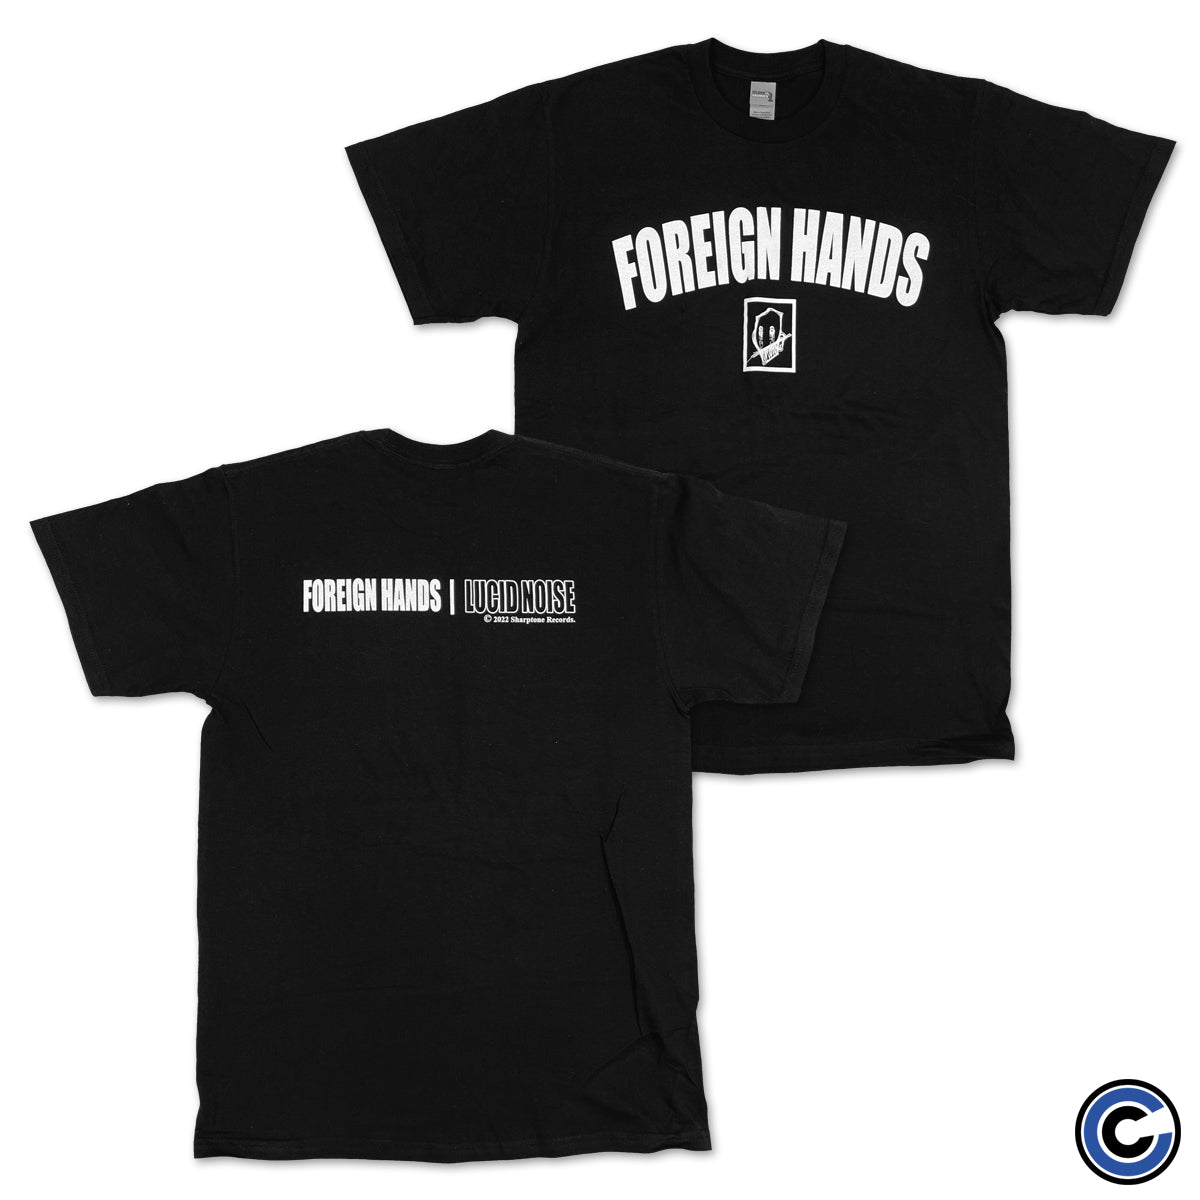 Foreign Hands "Arch" Shirt